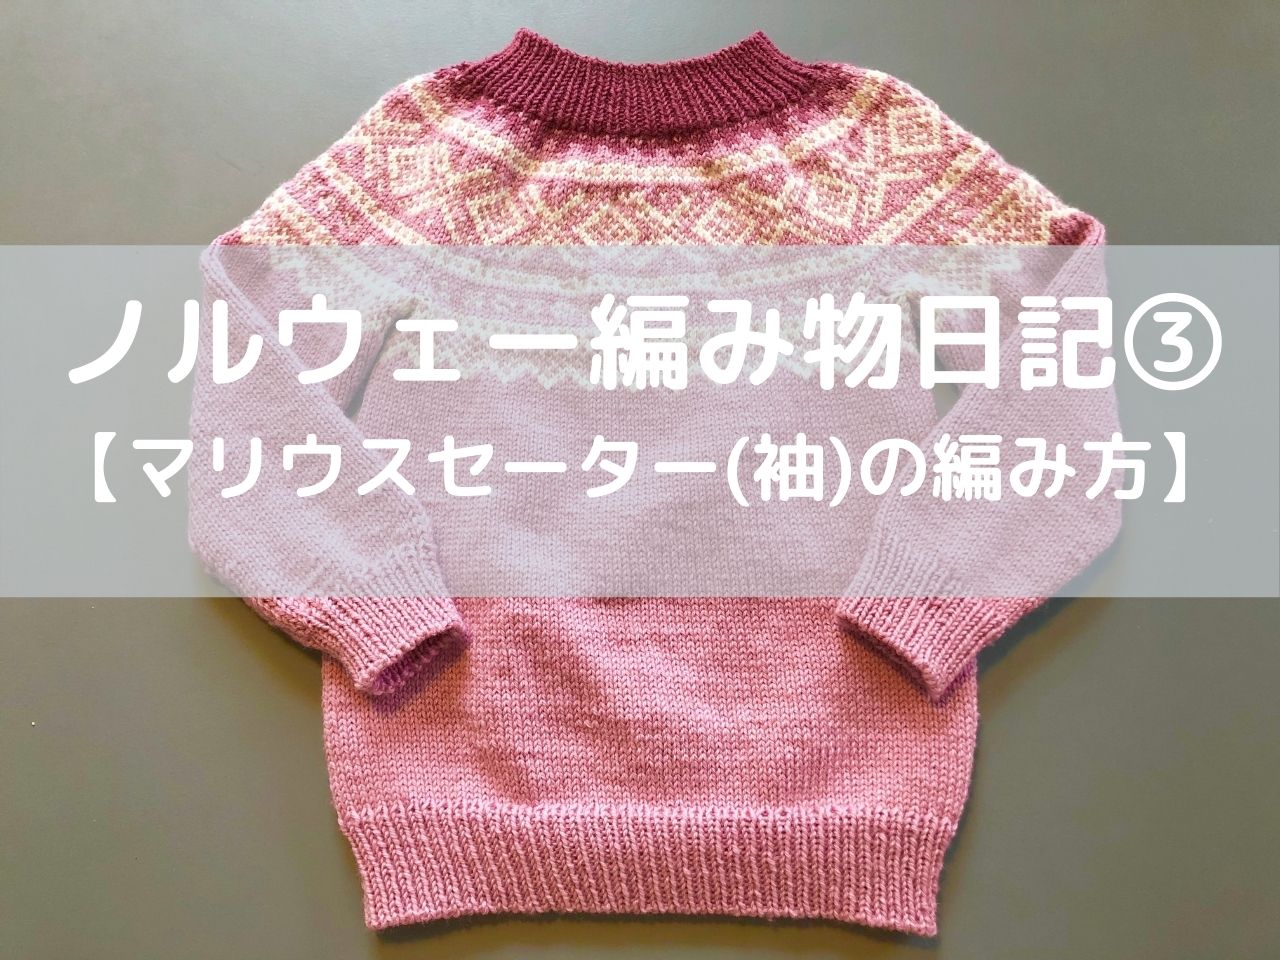 ノルウェー編み物日記3 マリウスセーター 袖 の編み方 もかのノルウェー生活ブログ